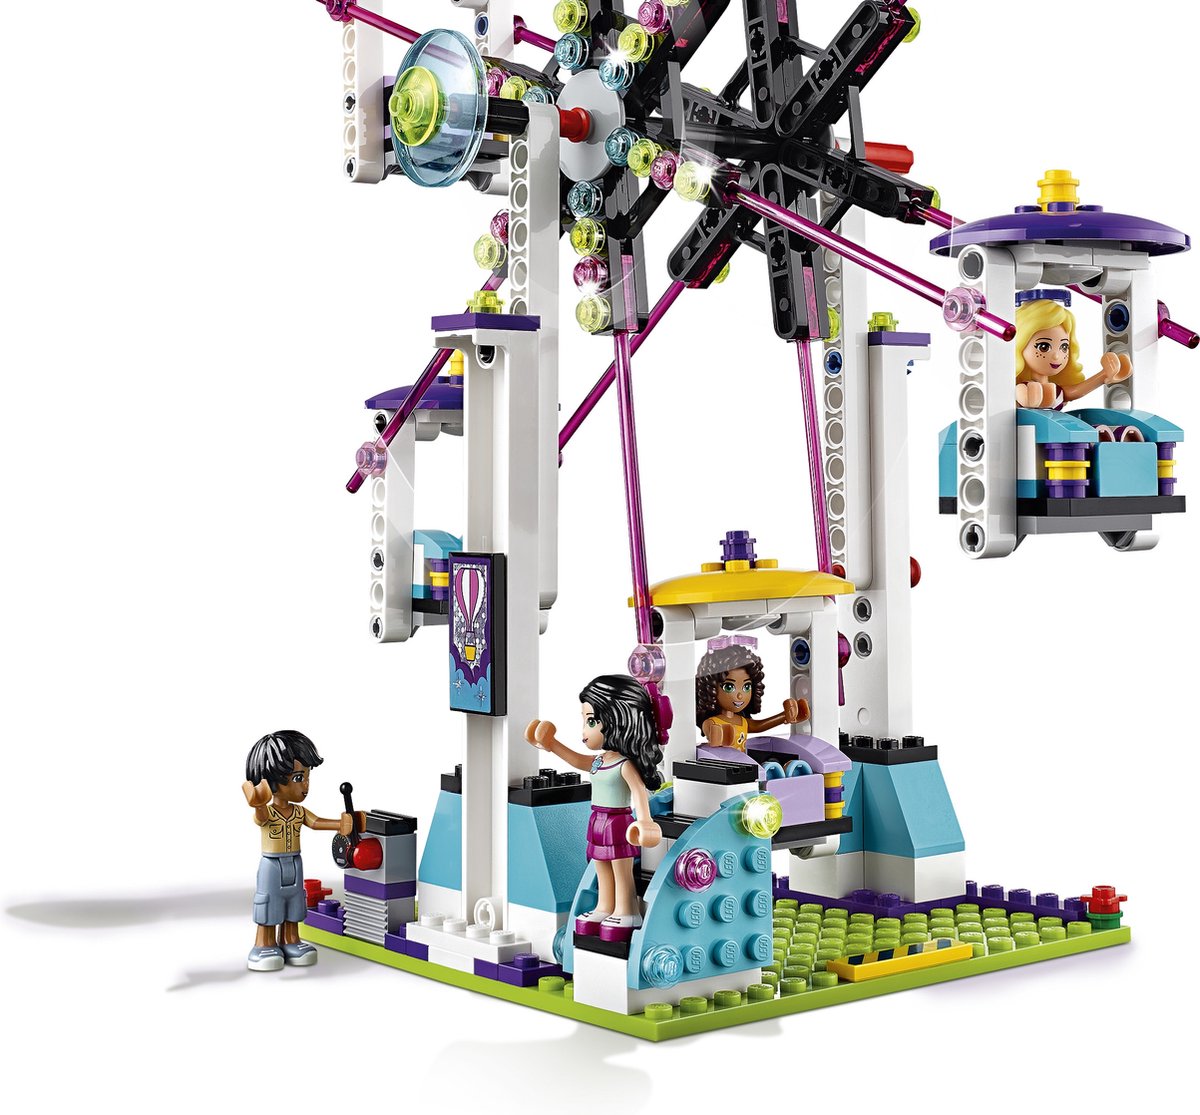 LEGO Friends Pretpark achtbaan - 41130 | bol.com